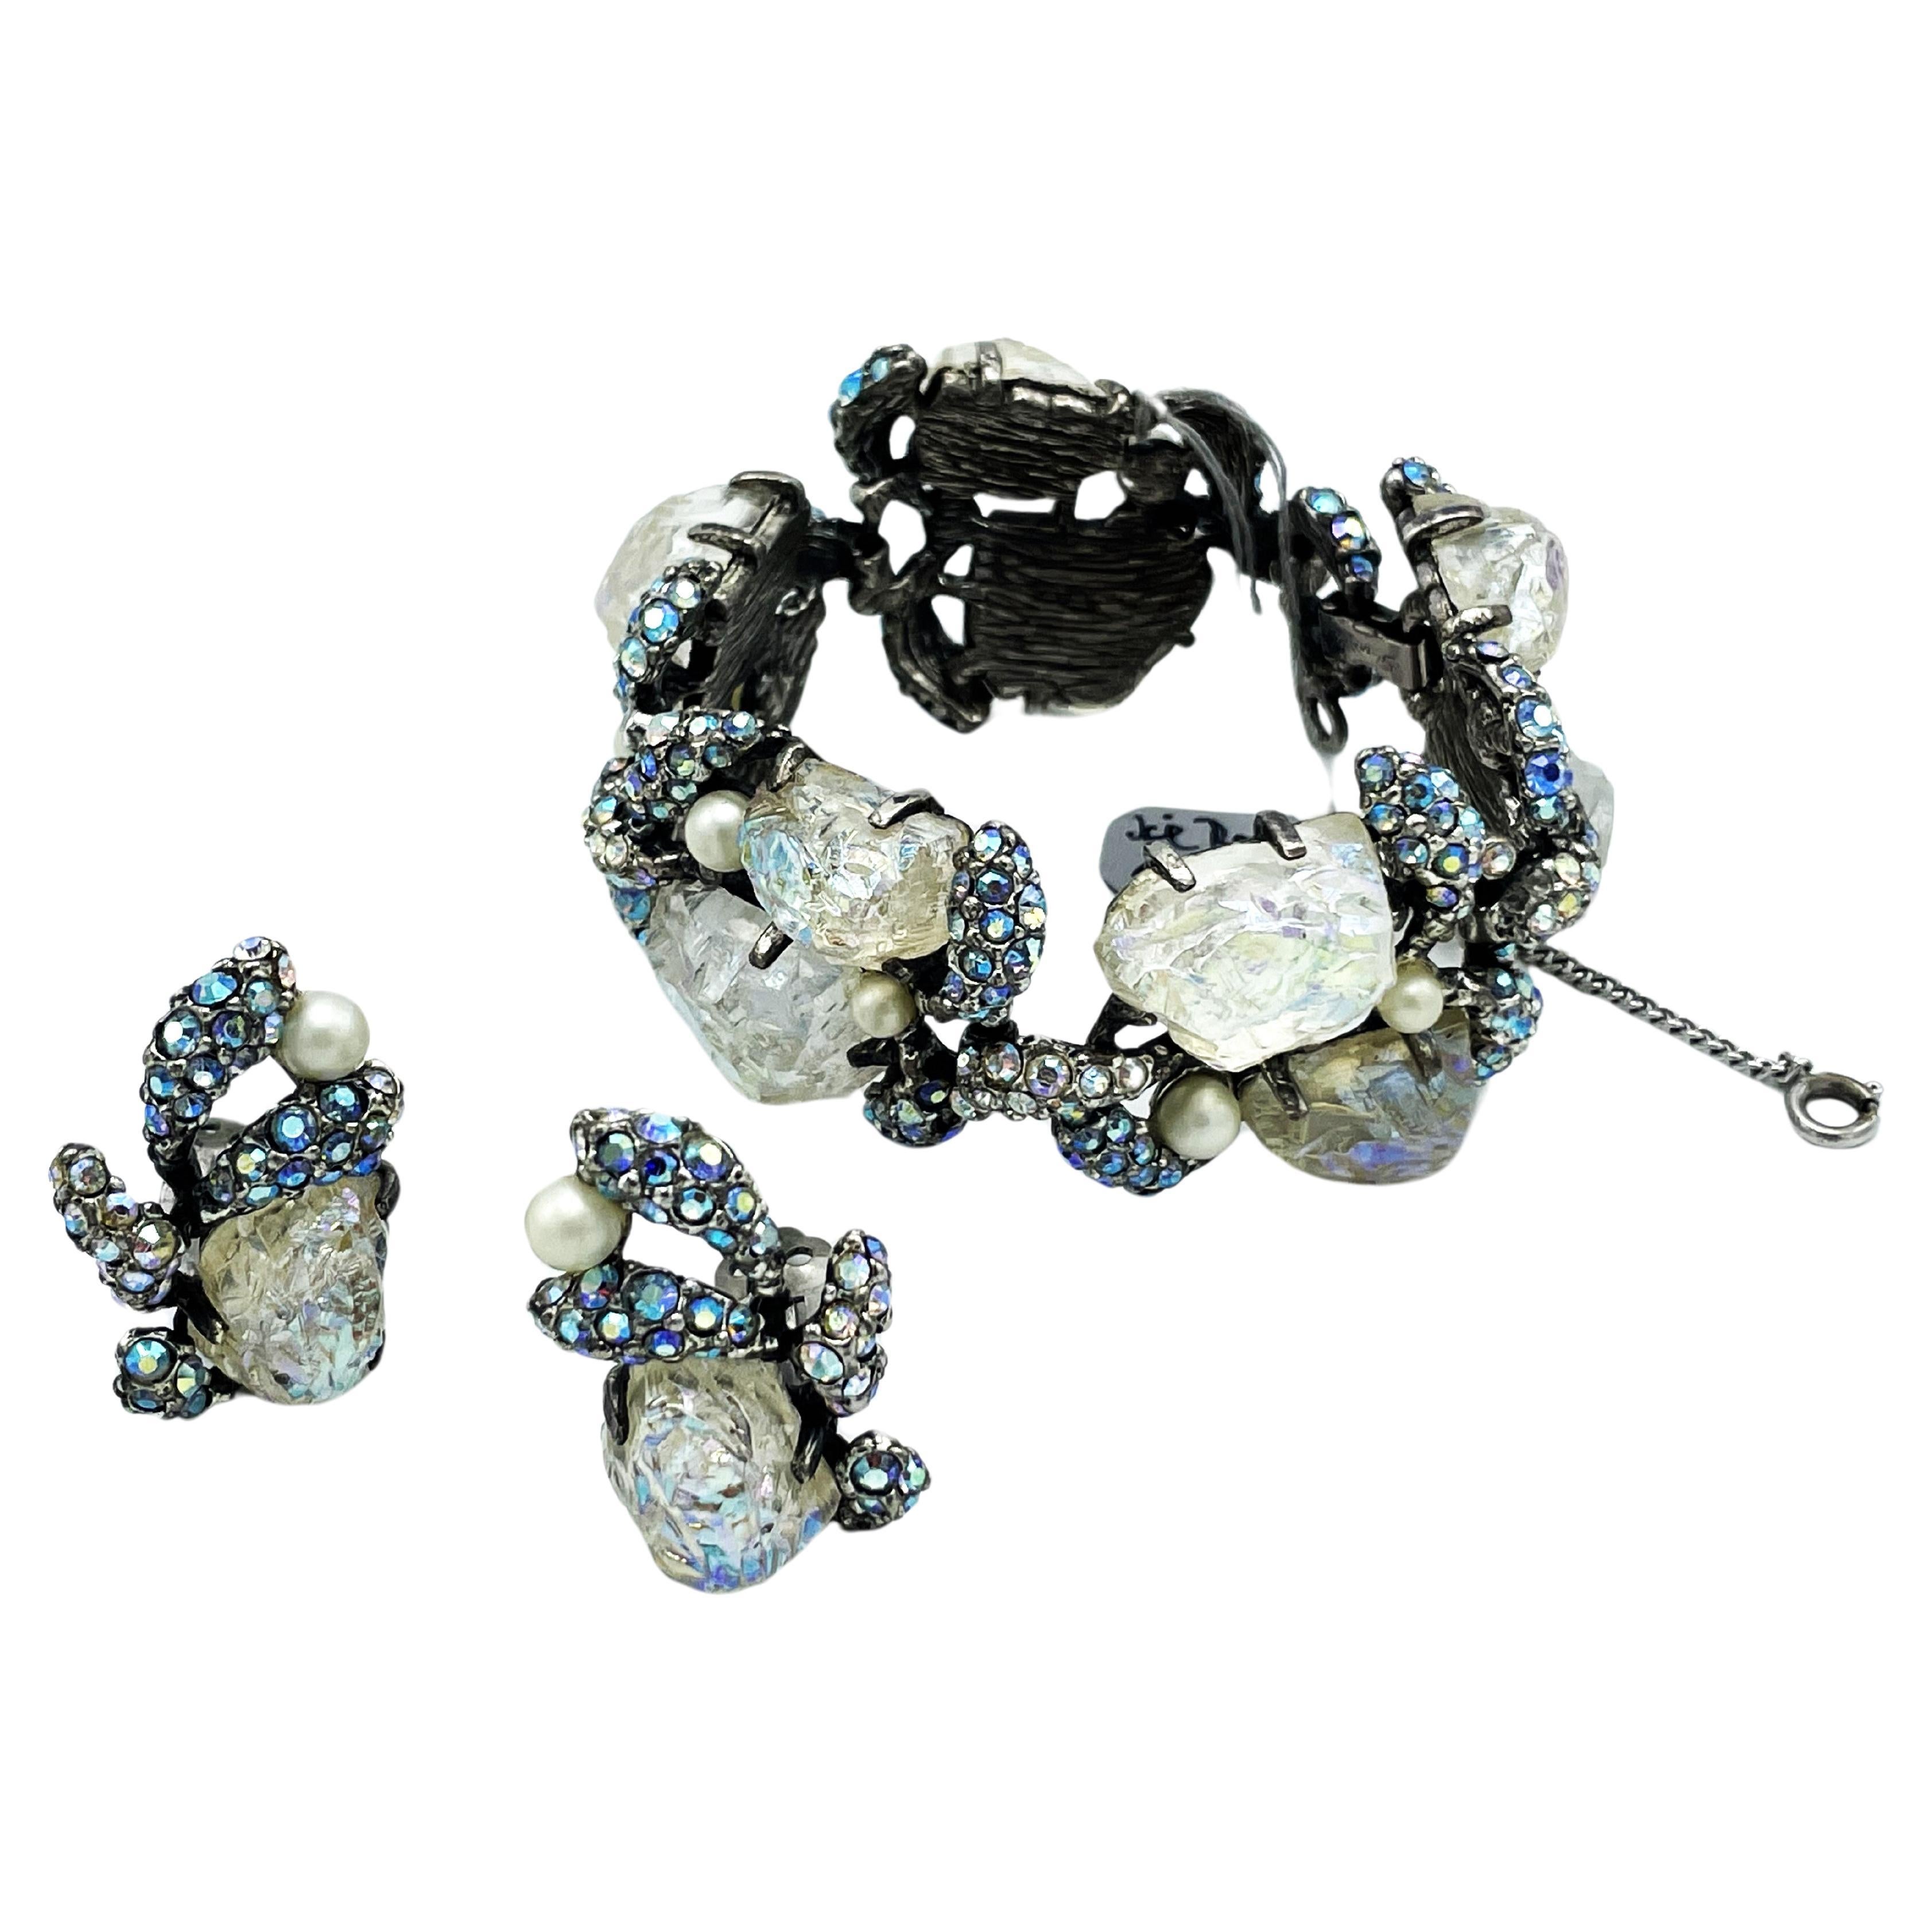 Un fantastique bracelet et des clips d'oreilles assortis de Schiaparlli, datant des années 1950 en Italie.
Le bracelet est composé de 5 maillons, chacun avec 2 pierres en verre ice rock, 2 perles artisanales et de nombreux petits strass aurescents.